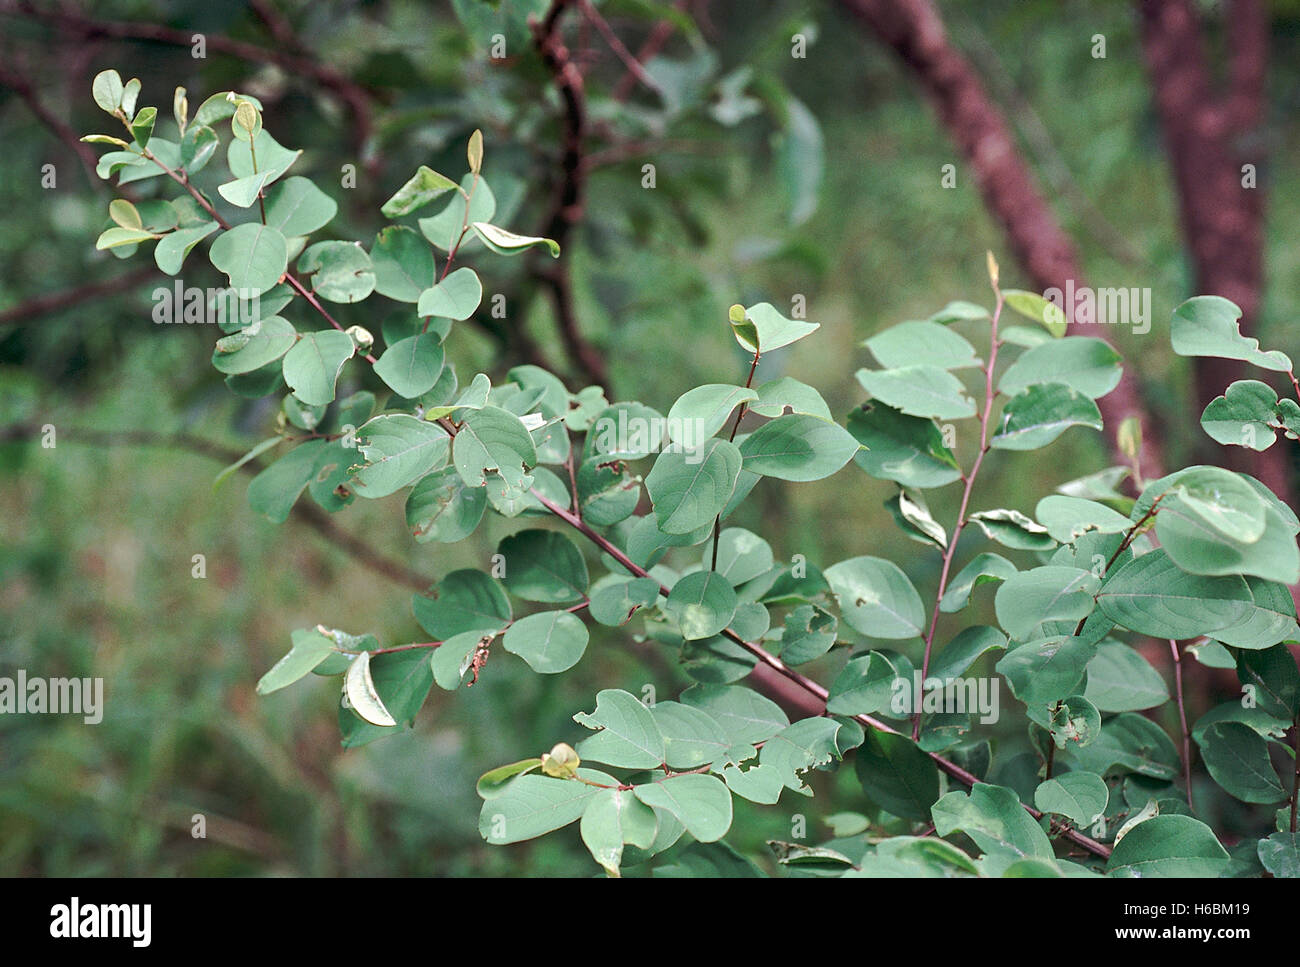 Les feuilles. securinega sp. famille : euphorbiaceae. un gros arbuste trouvé dans les forêts de feuillus. Les feuilles sont utilisées comme fourrage pour les chèvres. Banque D'Images